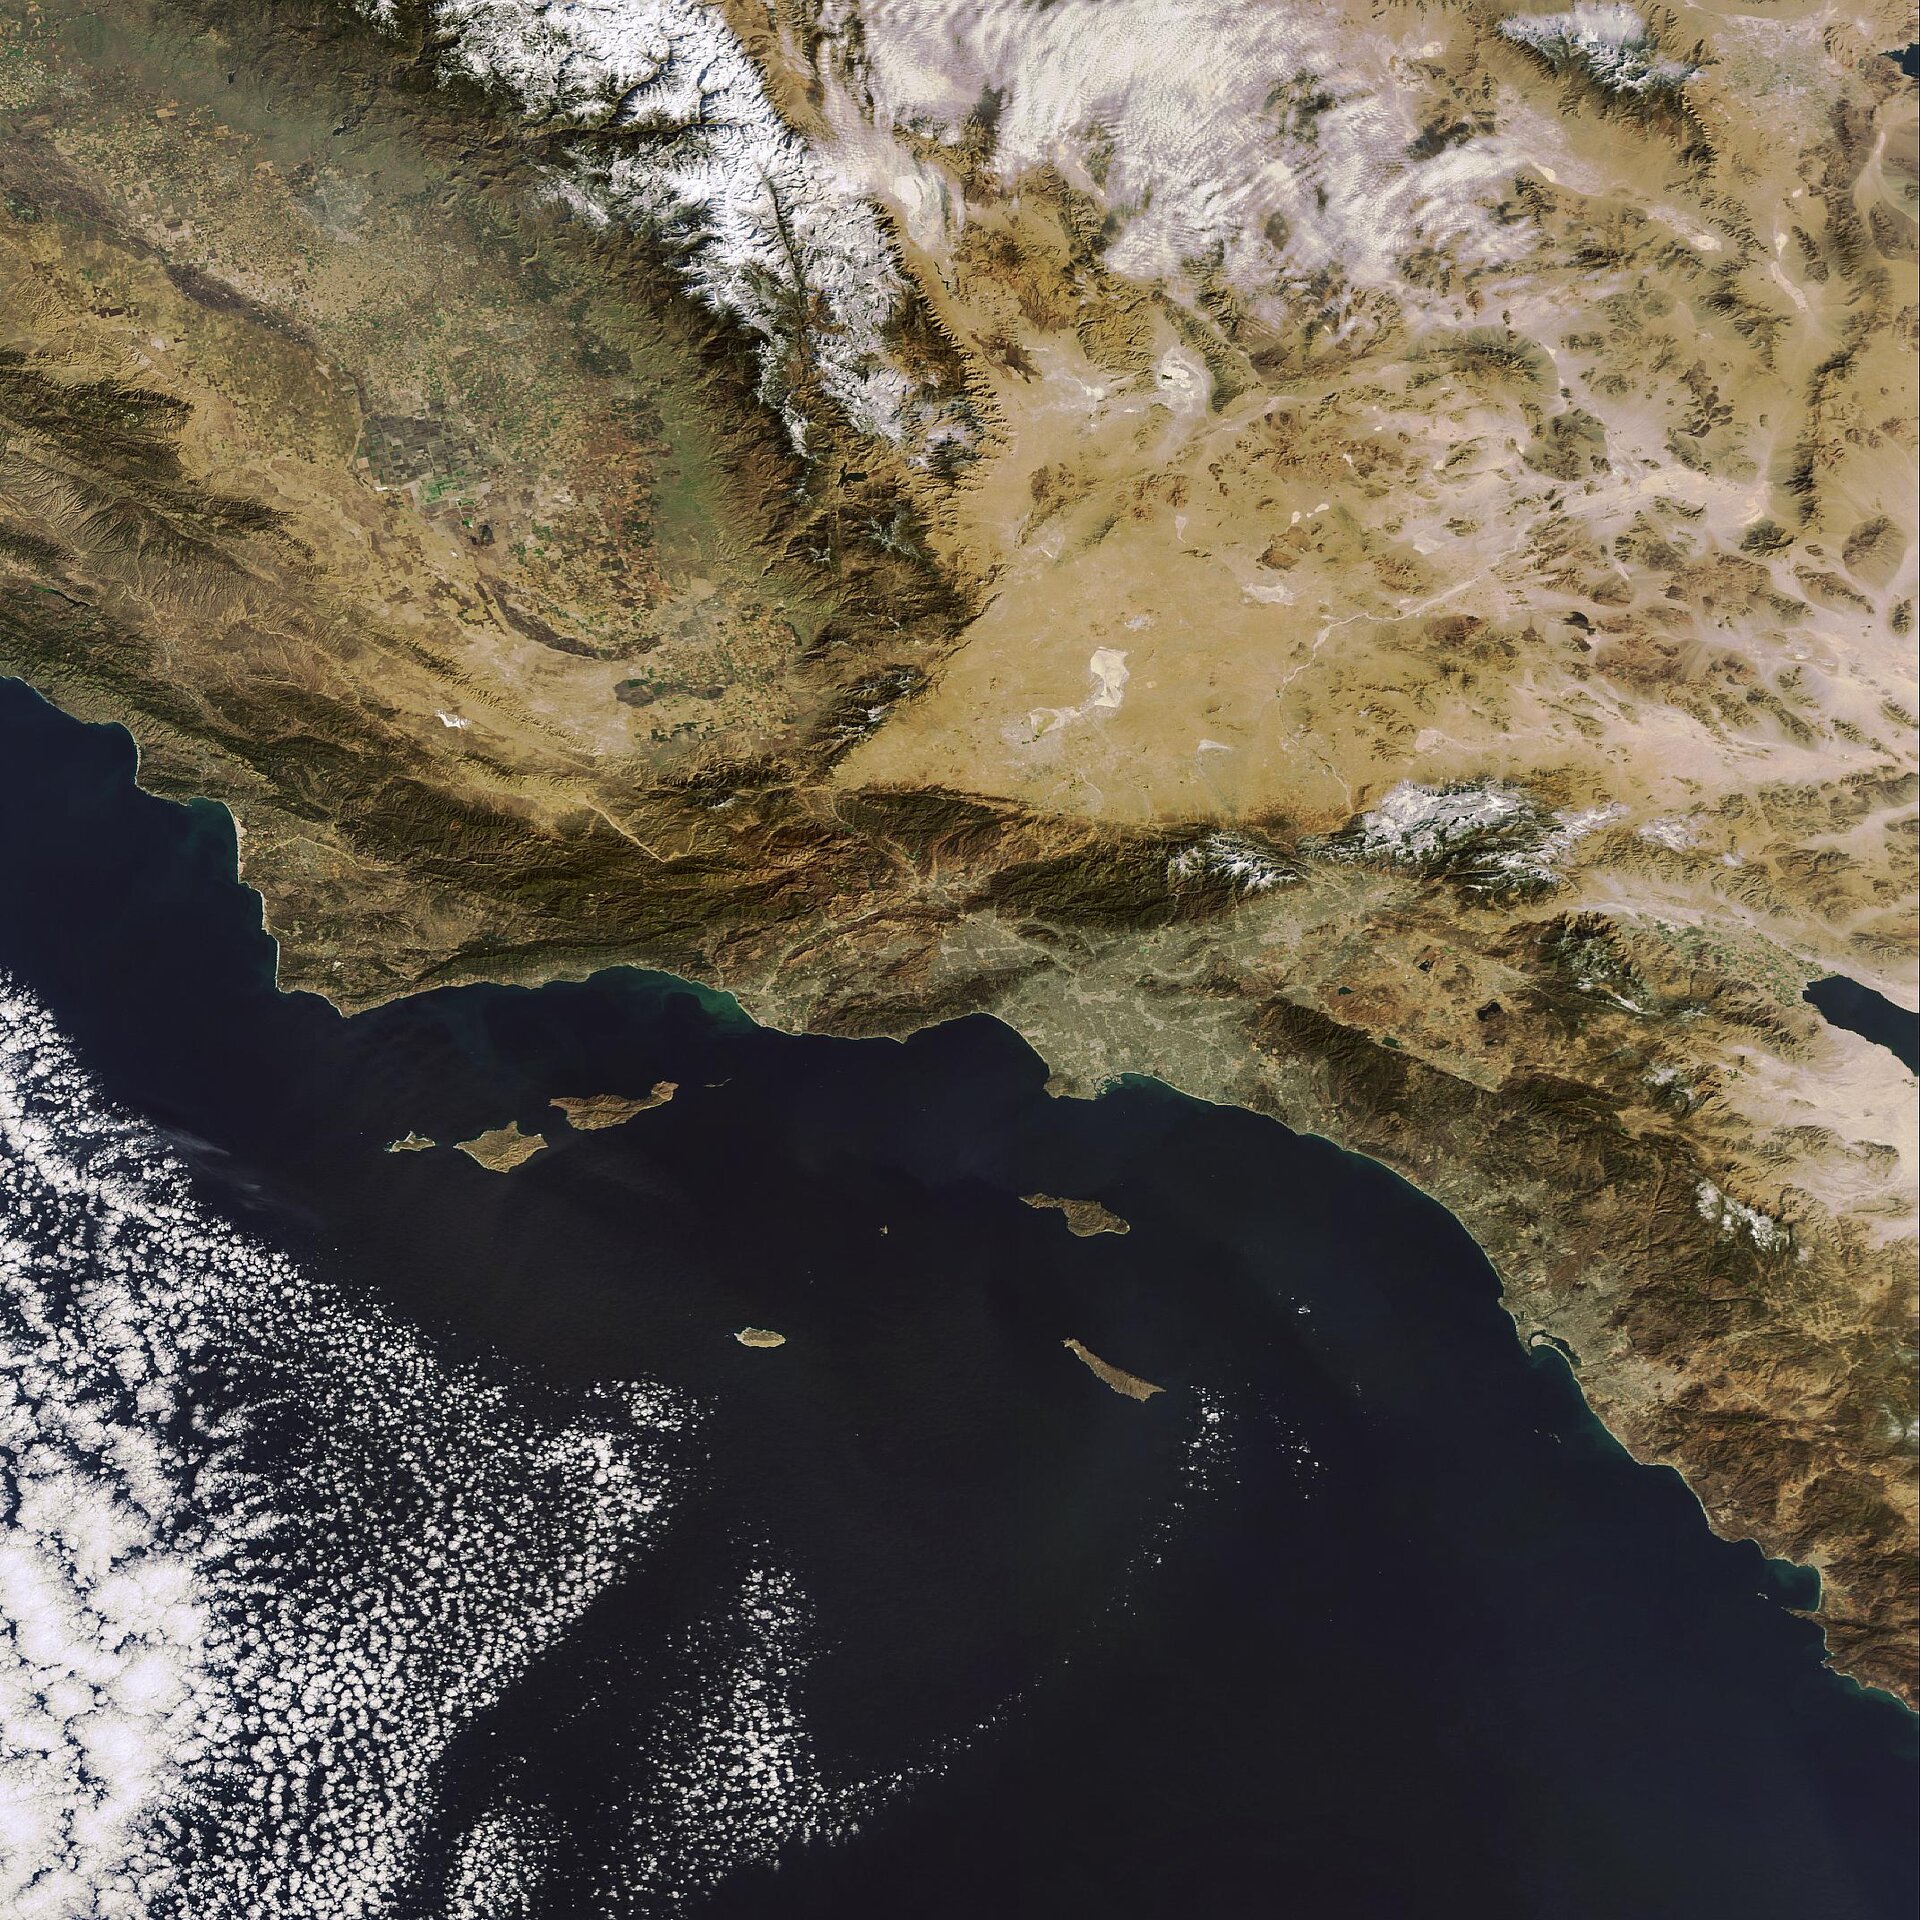 Envisat/MERIS image over California